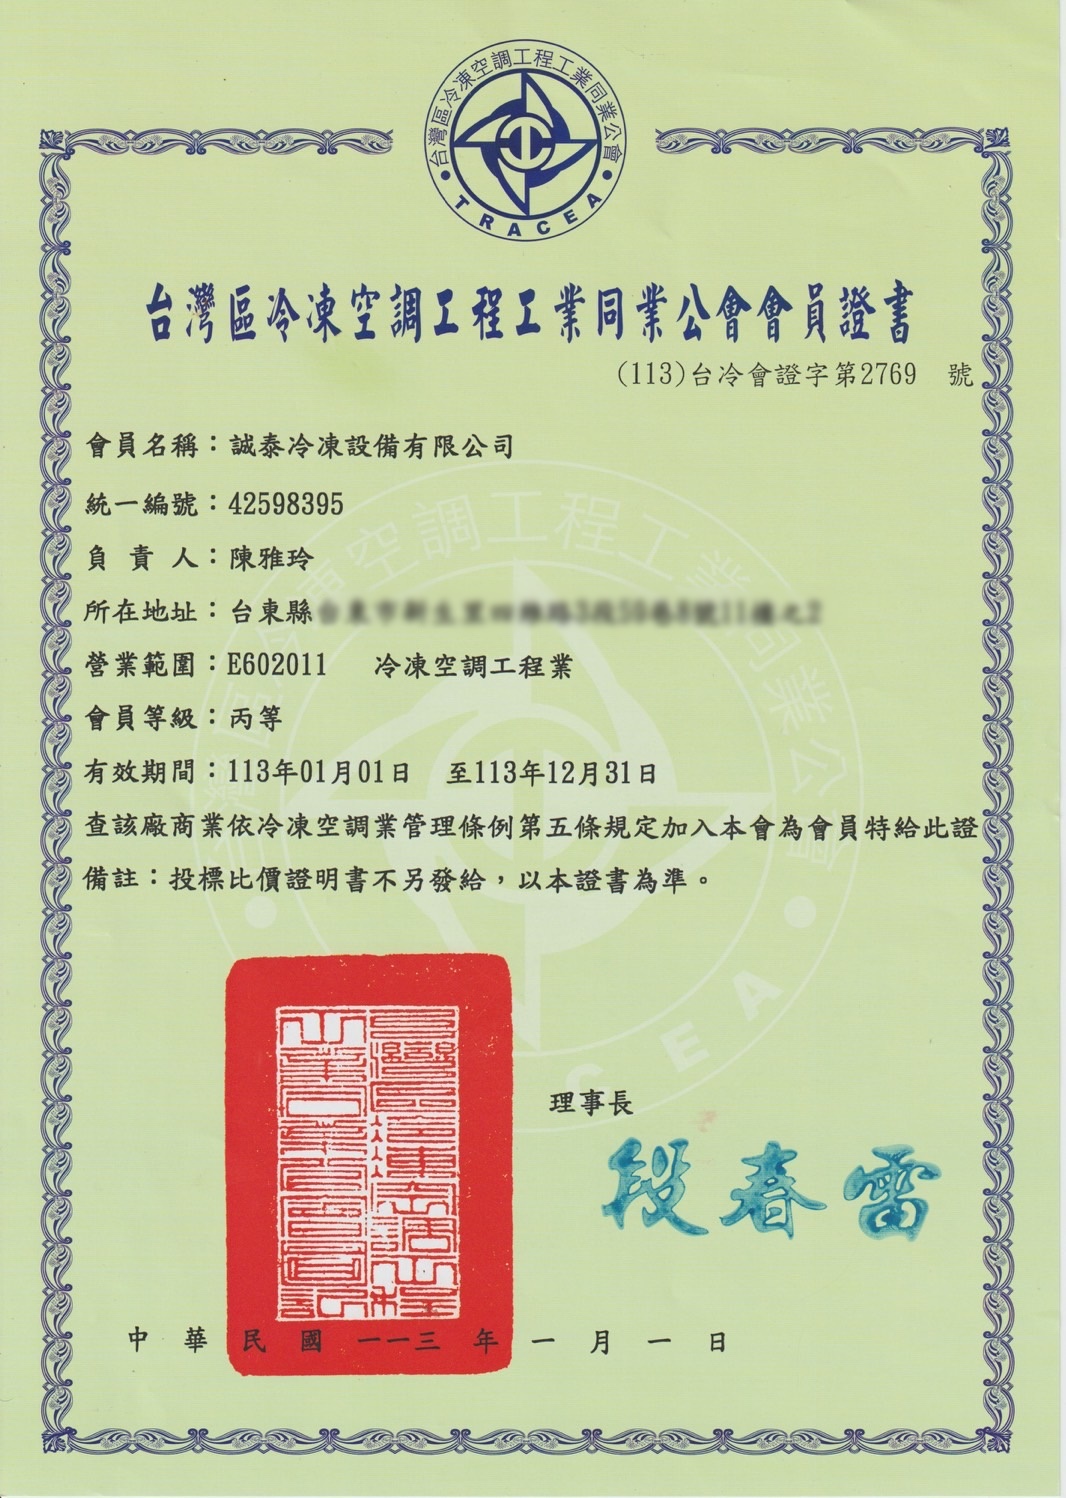 台灣區冷凍空調工程工業同業公會會員證書(住址已遮).png